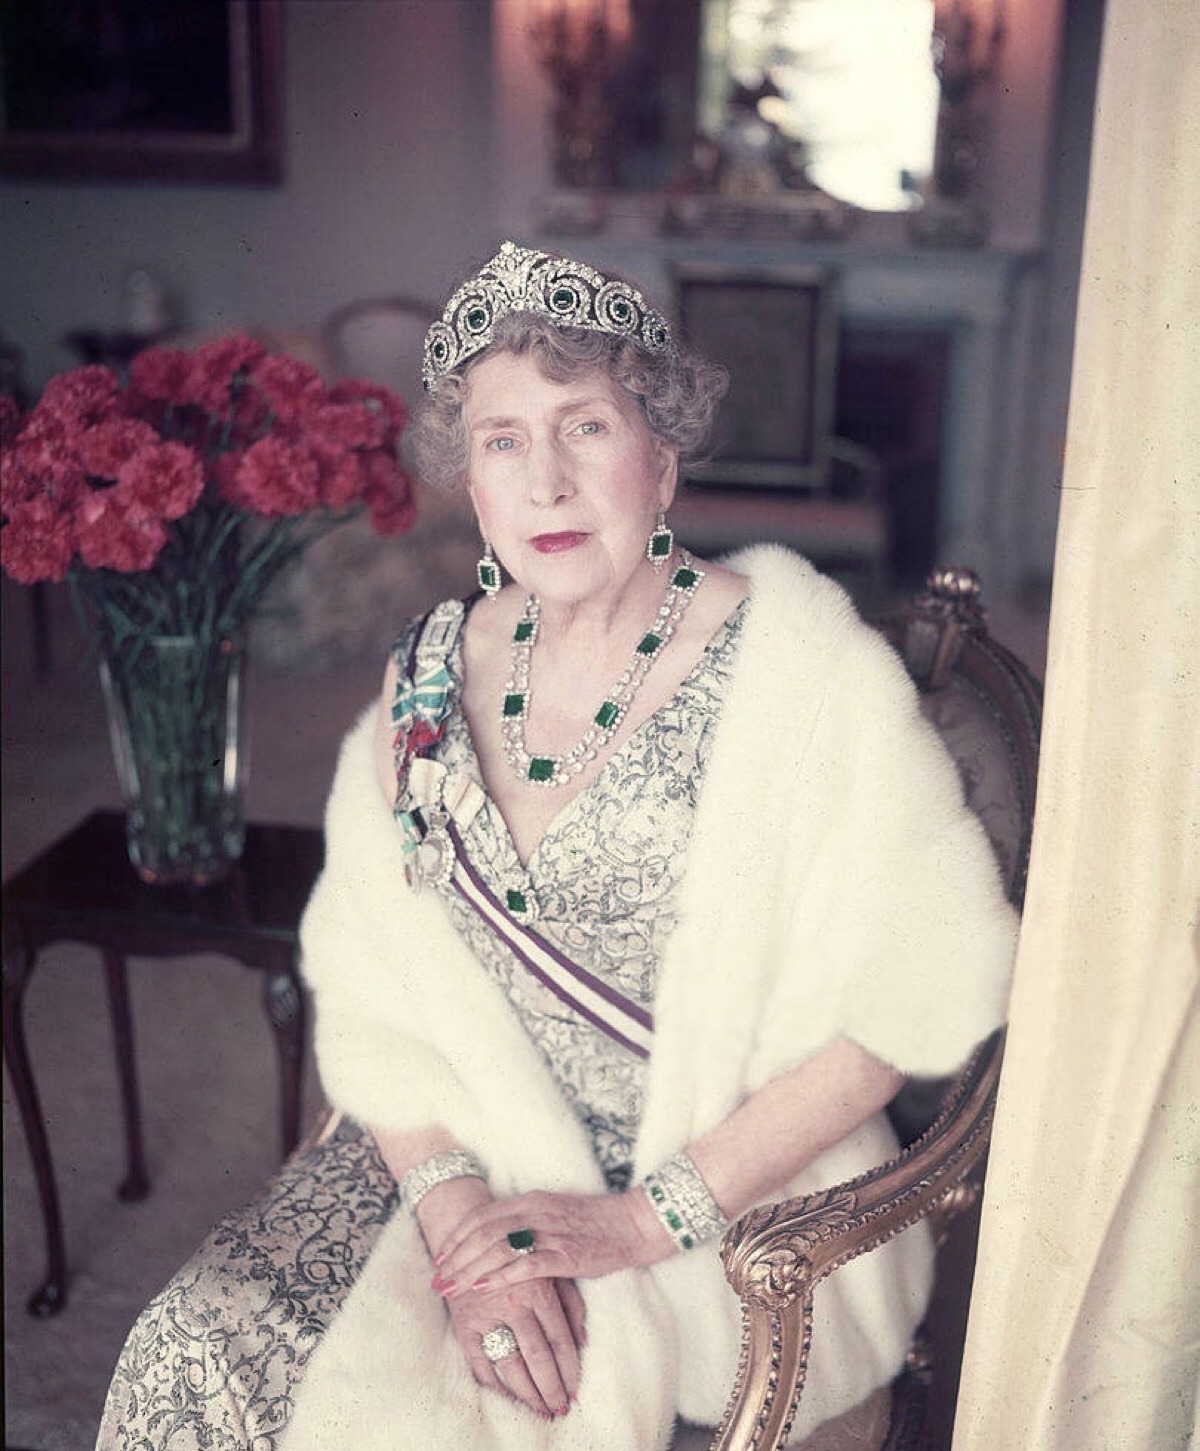 西班牙前王后维多利亚尤金妮,她的这套祖母绿王冠套装在西班牙王室